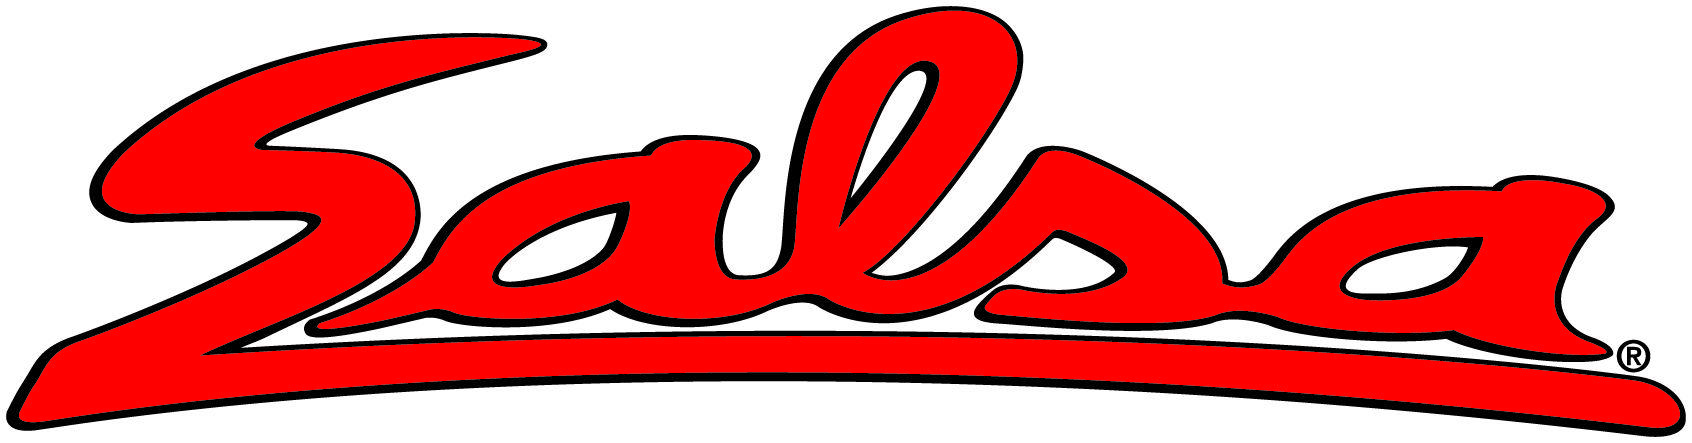 Salsa Logo - Logo Salsa - Clip Art Library